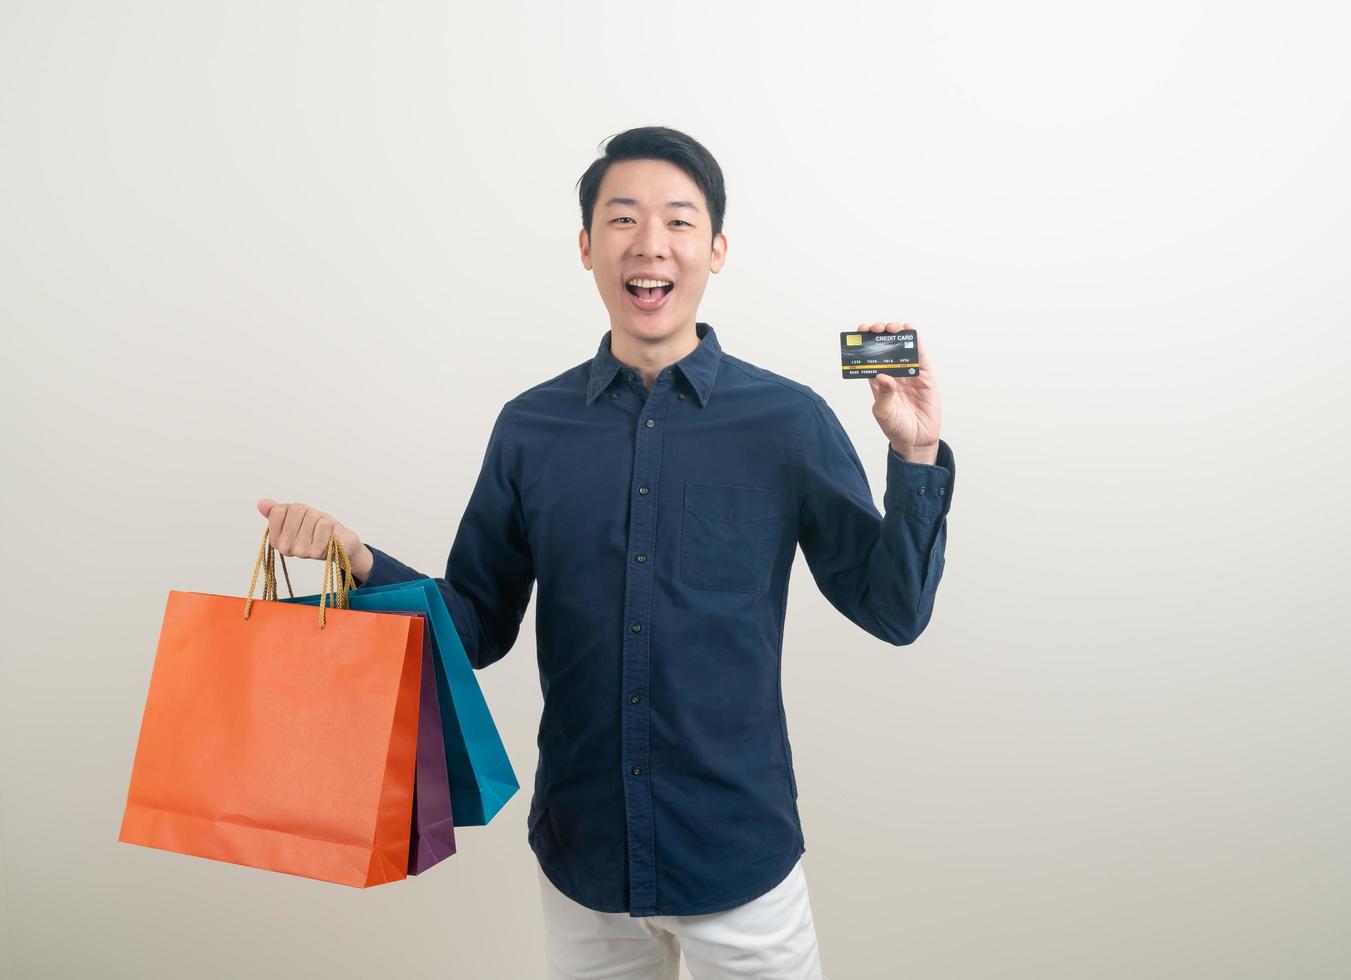 portret jonge aziatische man met creditcard en boodschappentas foto